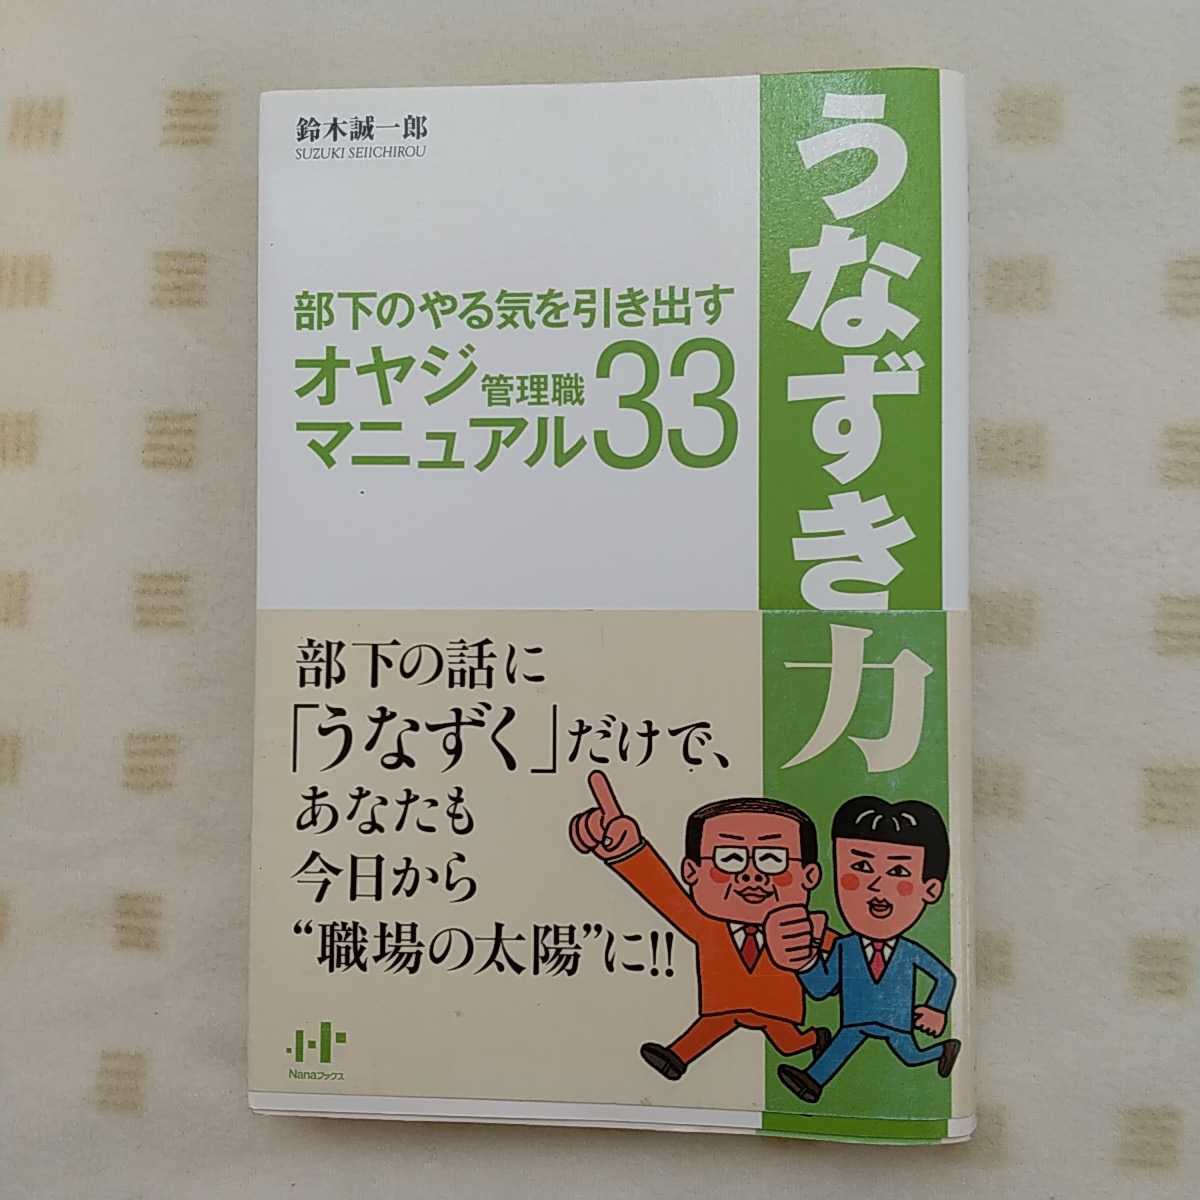  б/у книга@*[.... сила часть внизу. .... растягивать oyaji управление работа manual 33] Suzuki . один . работа Nana книги 